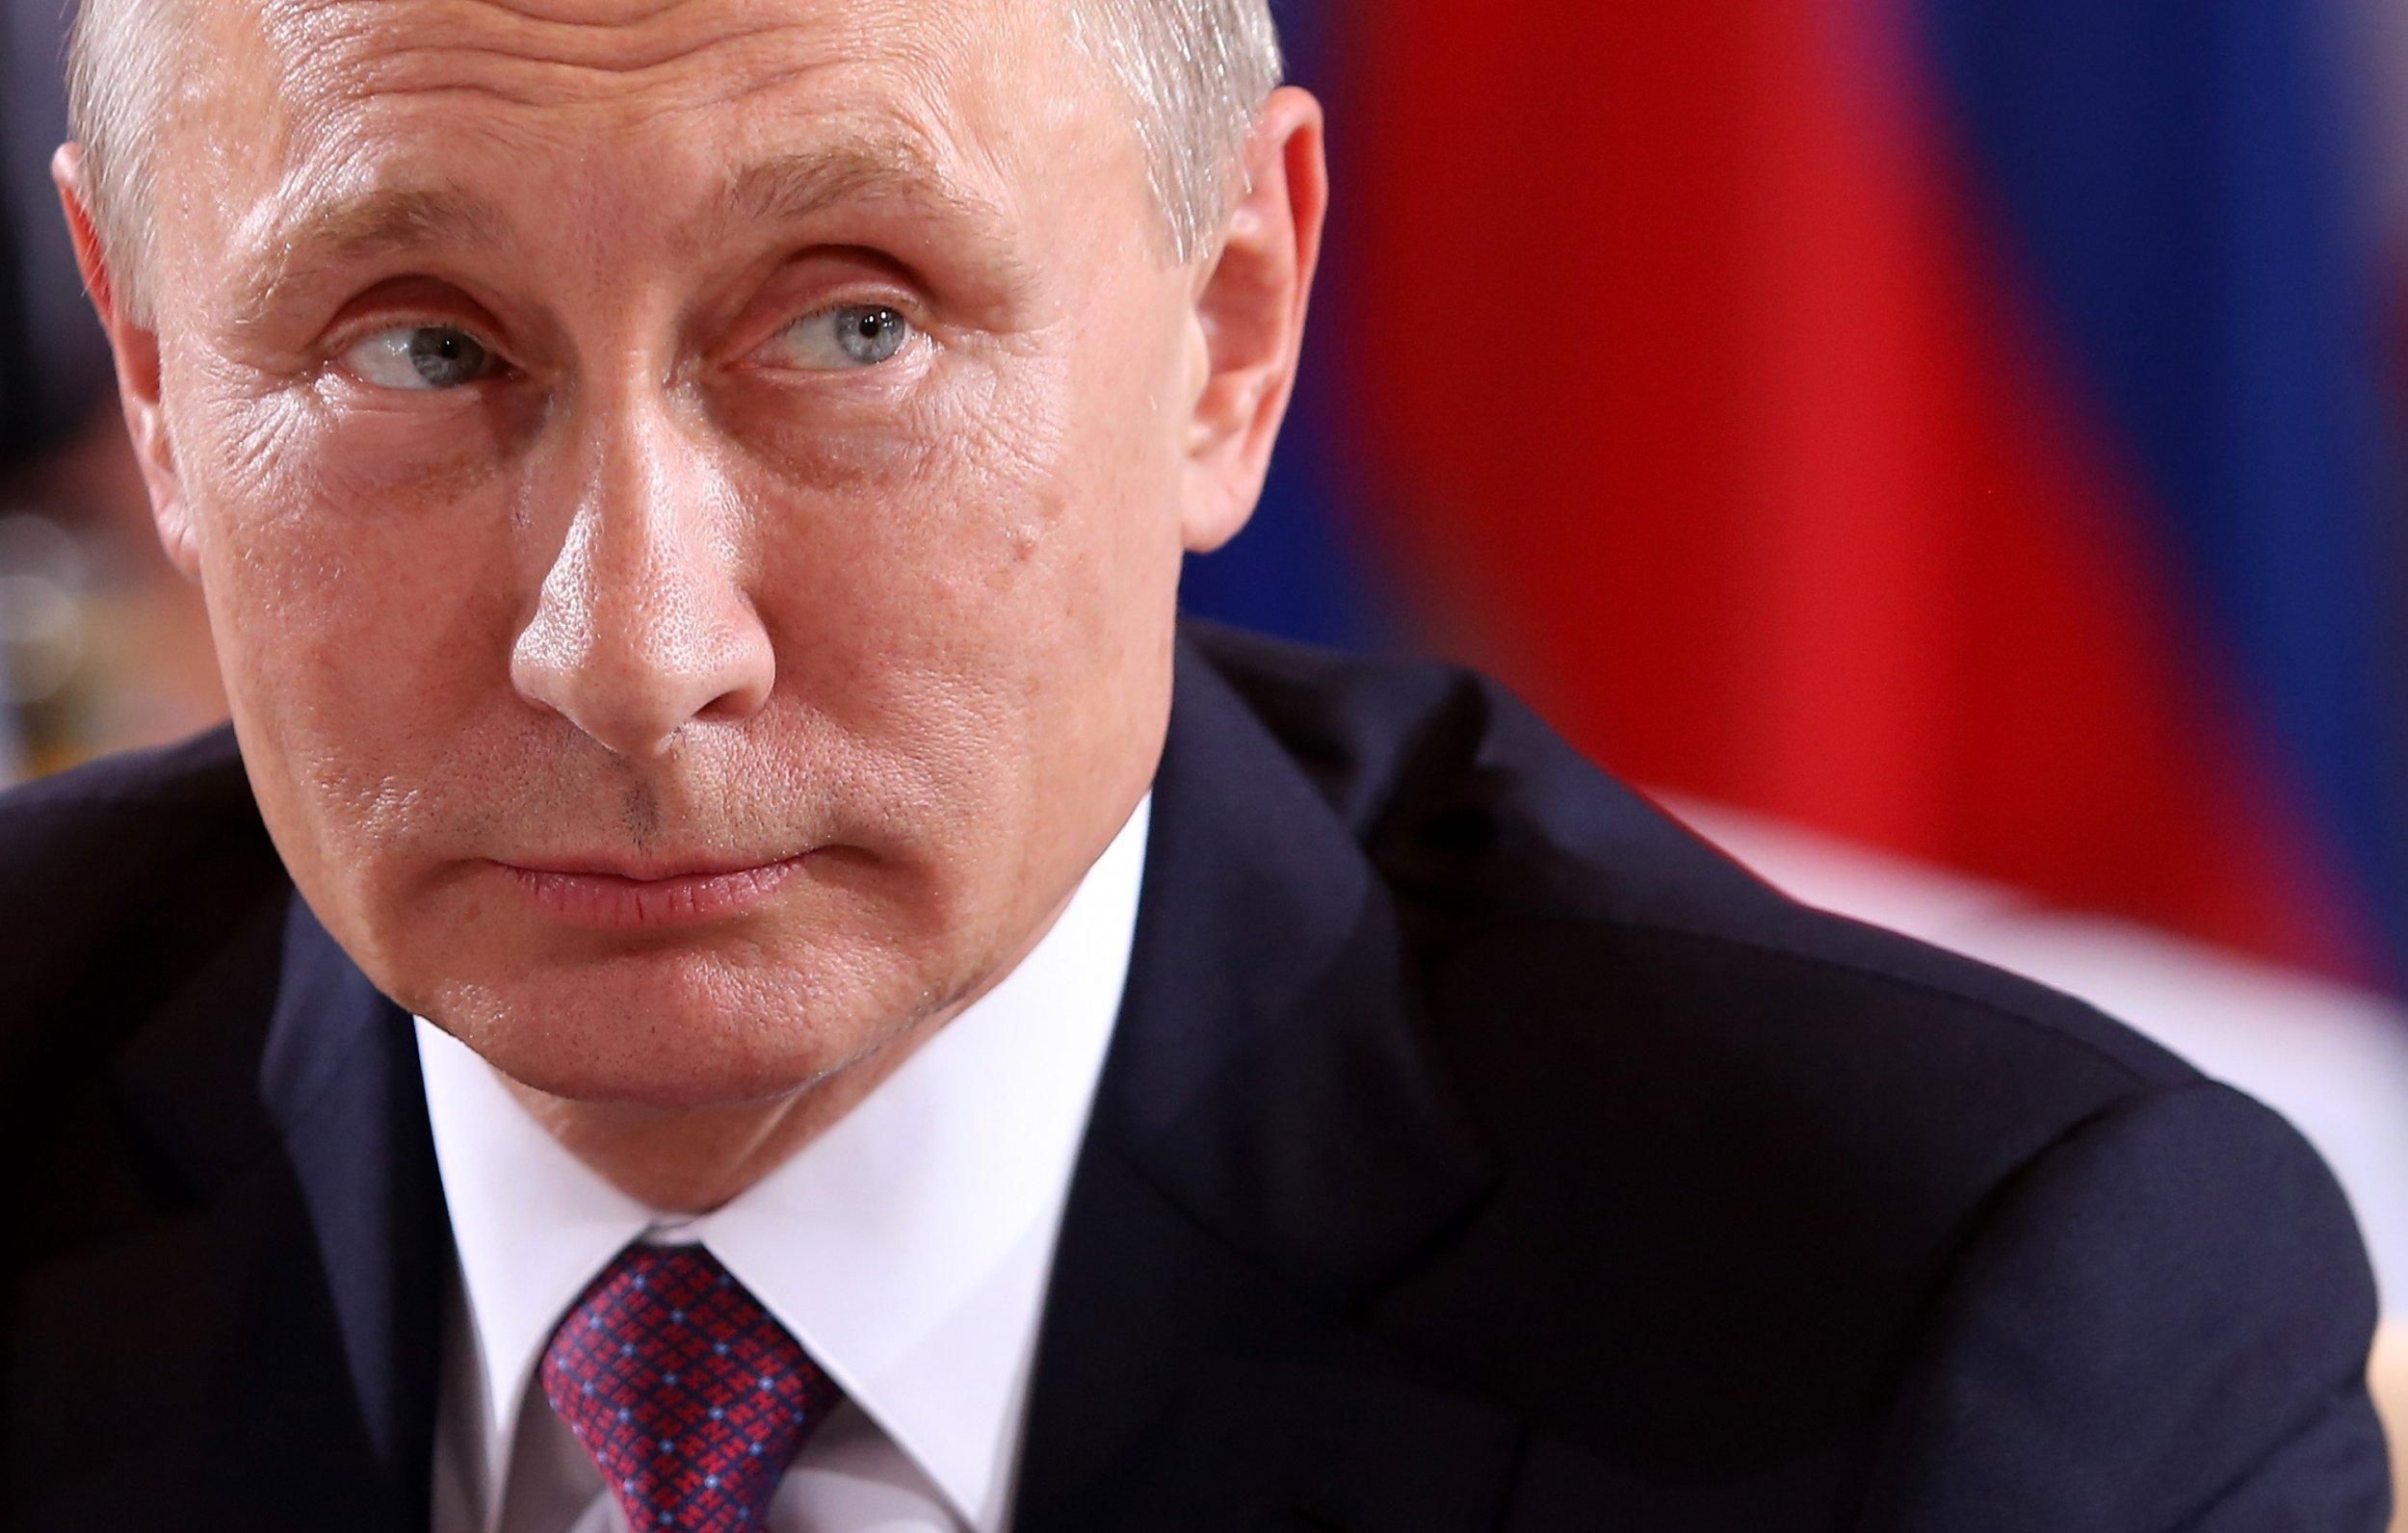 Путина на пресс-конференции спросили о допинге и дисквалификации России: он снова солгал